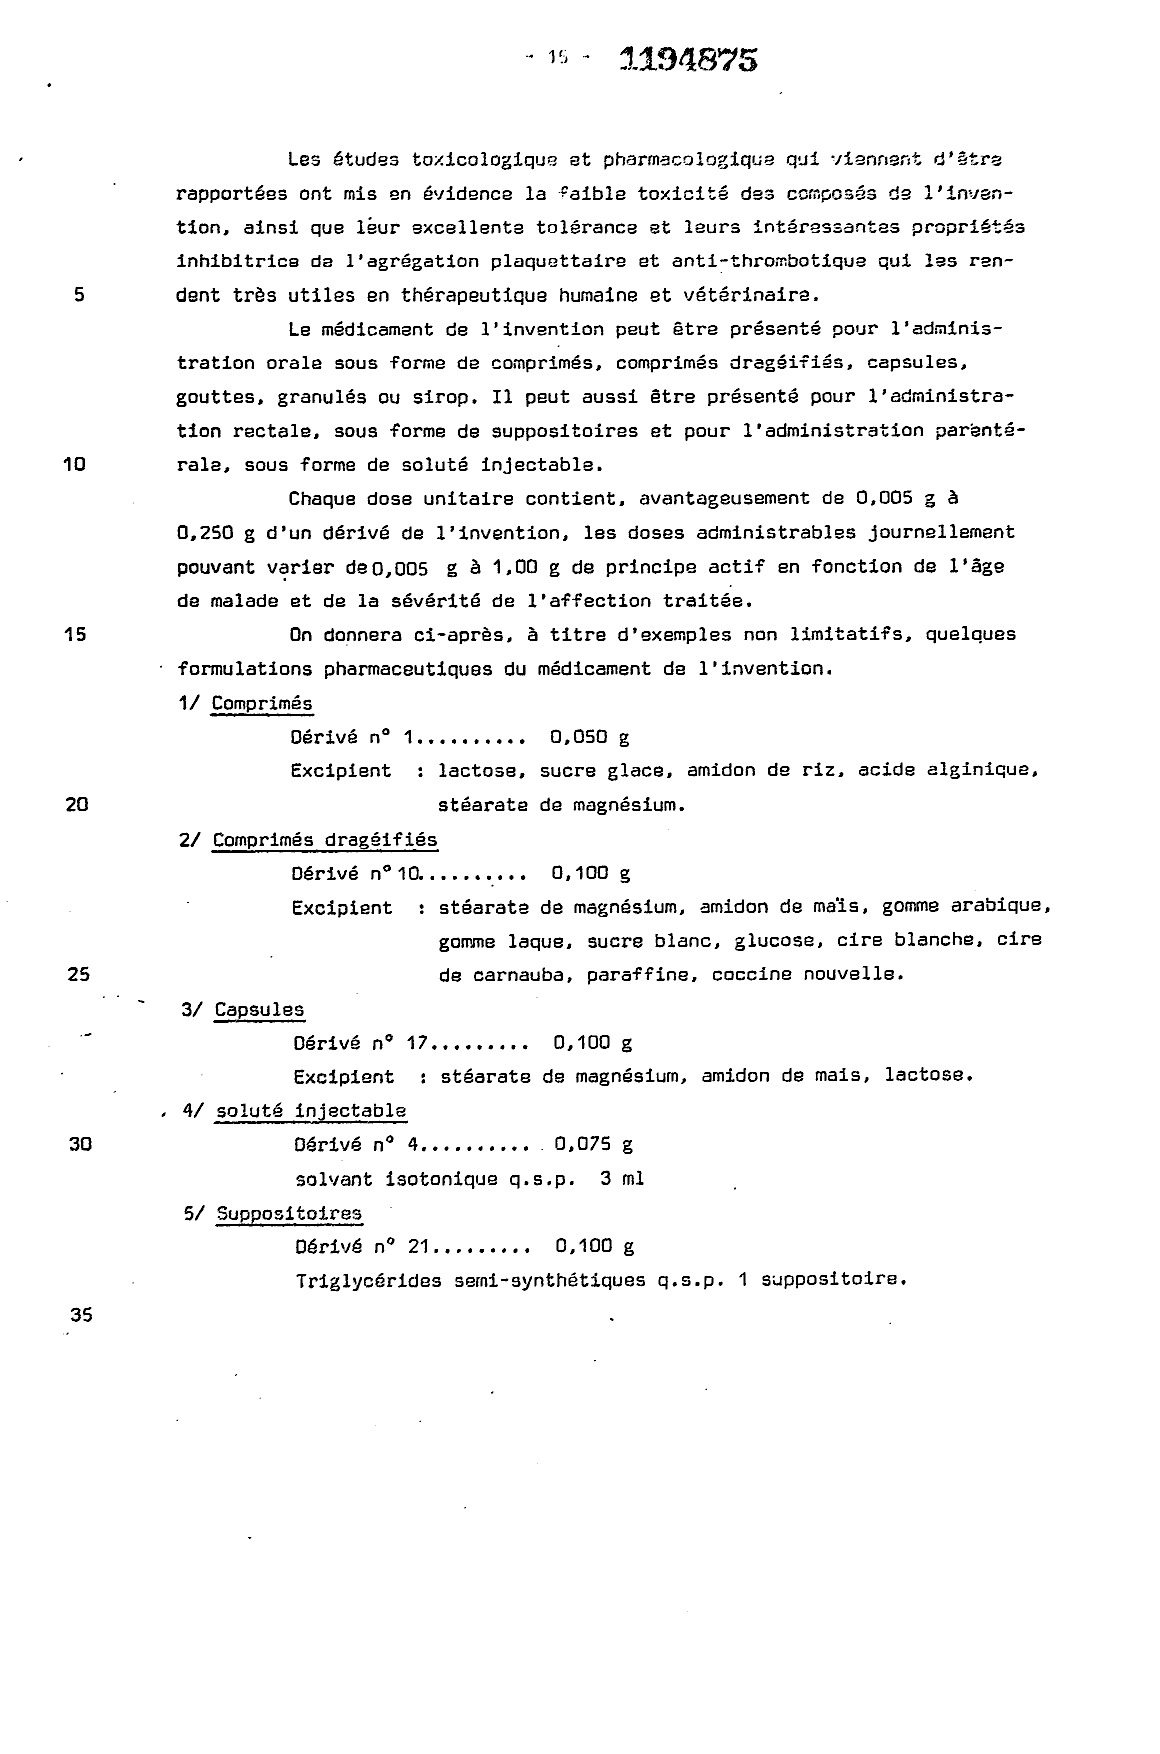 Canadian Patent Document 1194875. Description 19921218. Image 15 of 15